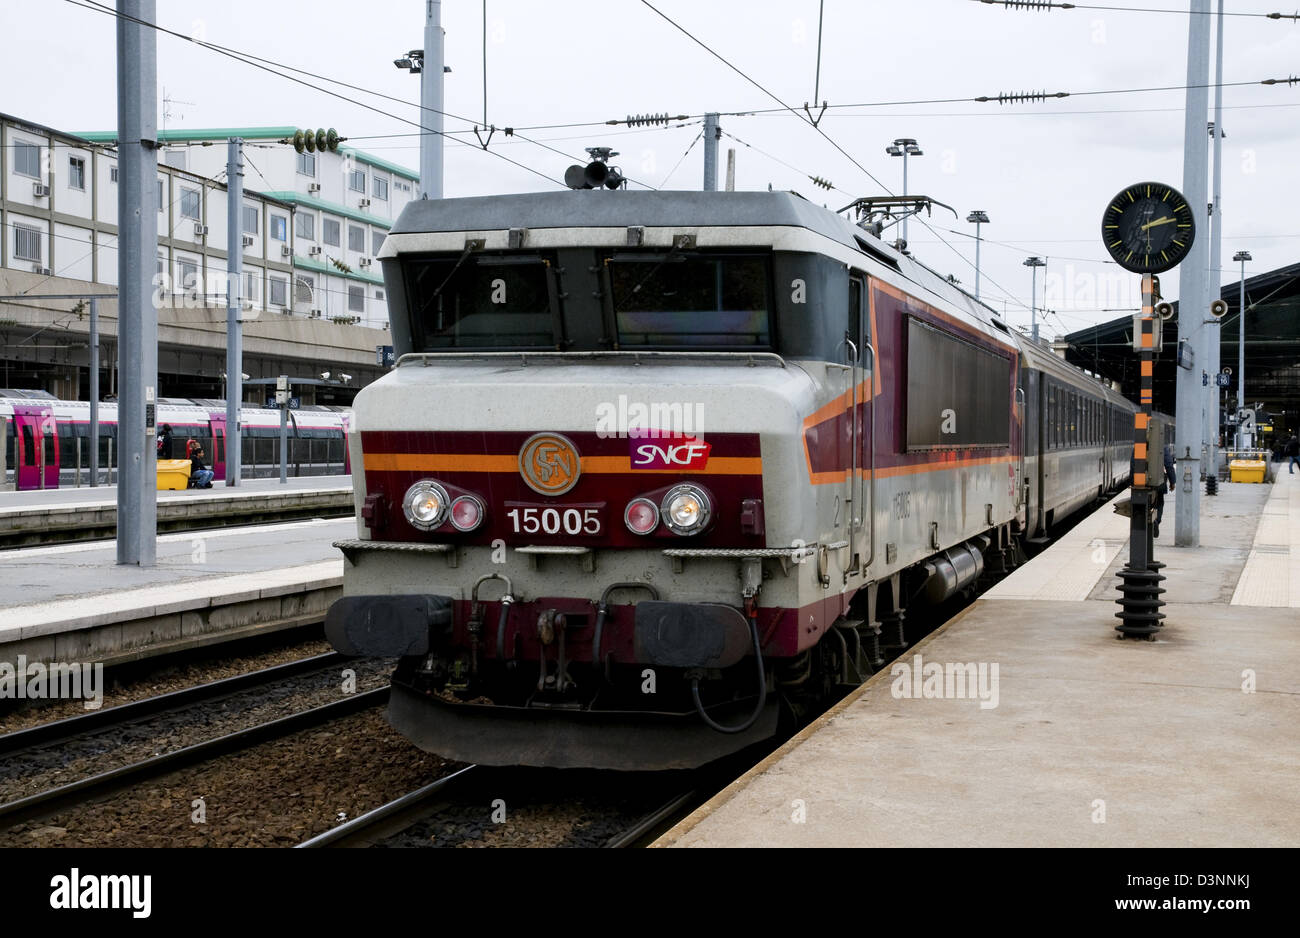 Clase sncf BB15000,15005,locomotora eléctrica,Gare du Nord, Paris, Francia Foto de stock